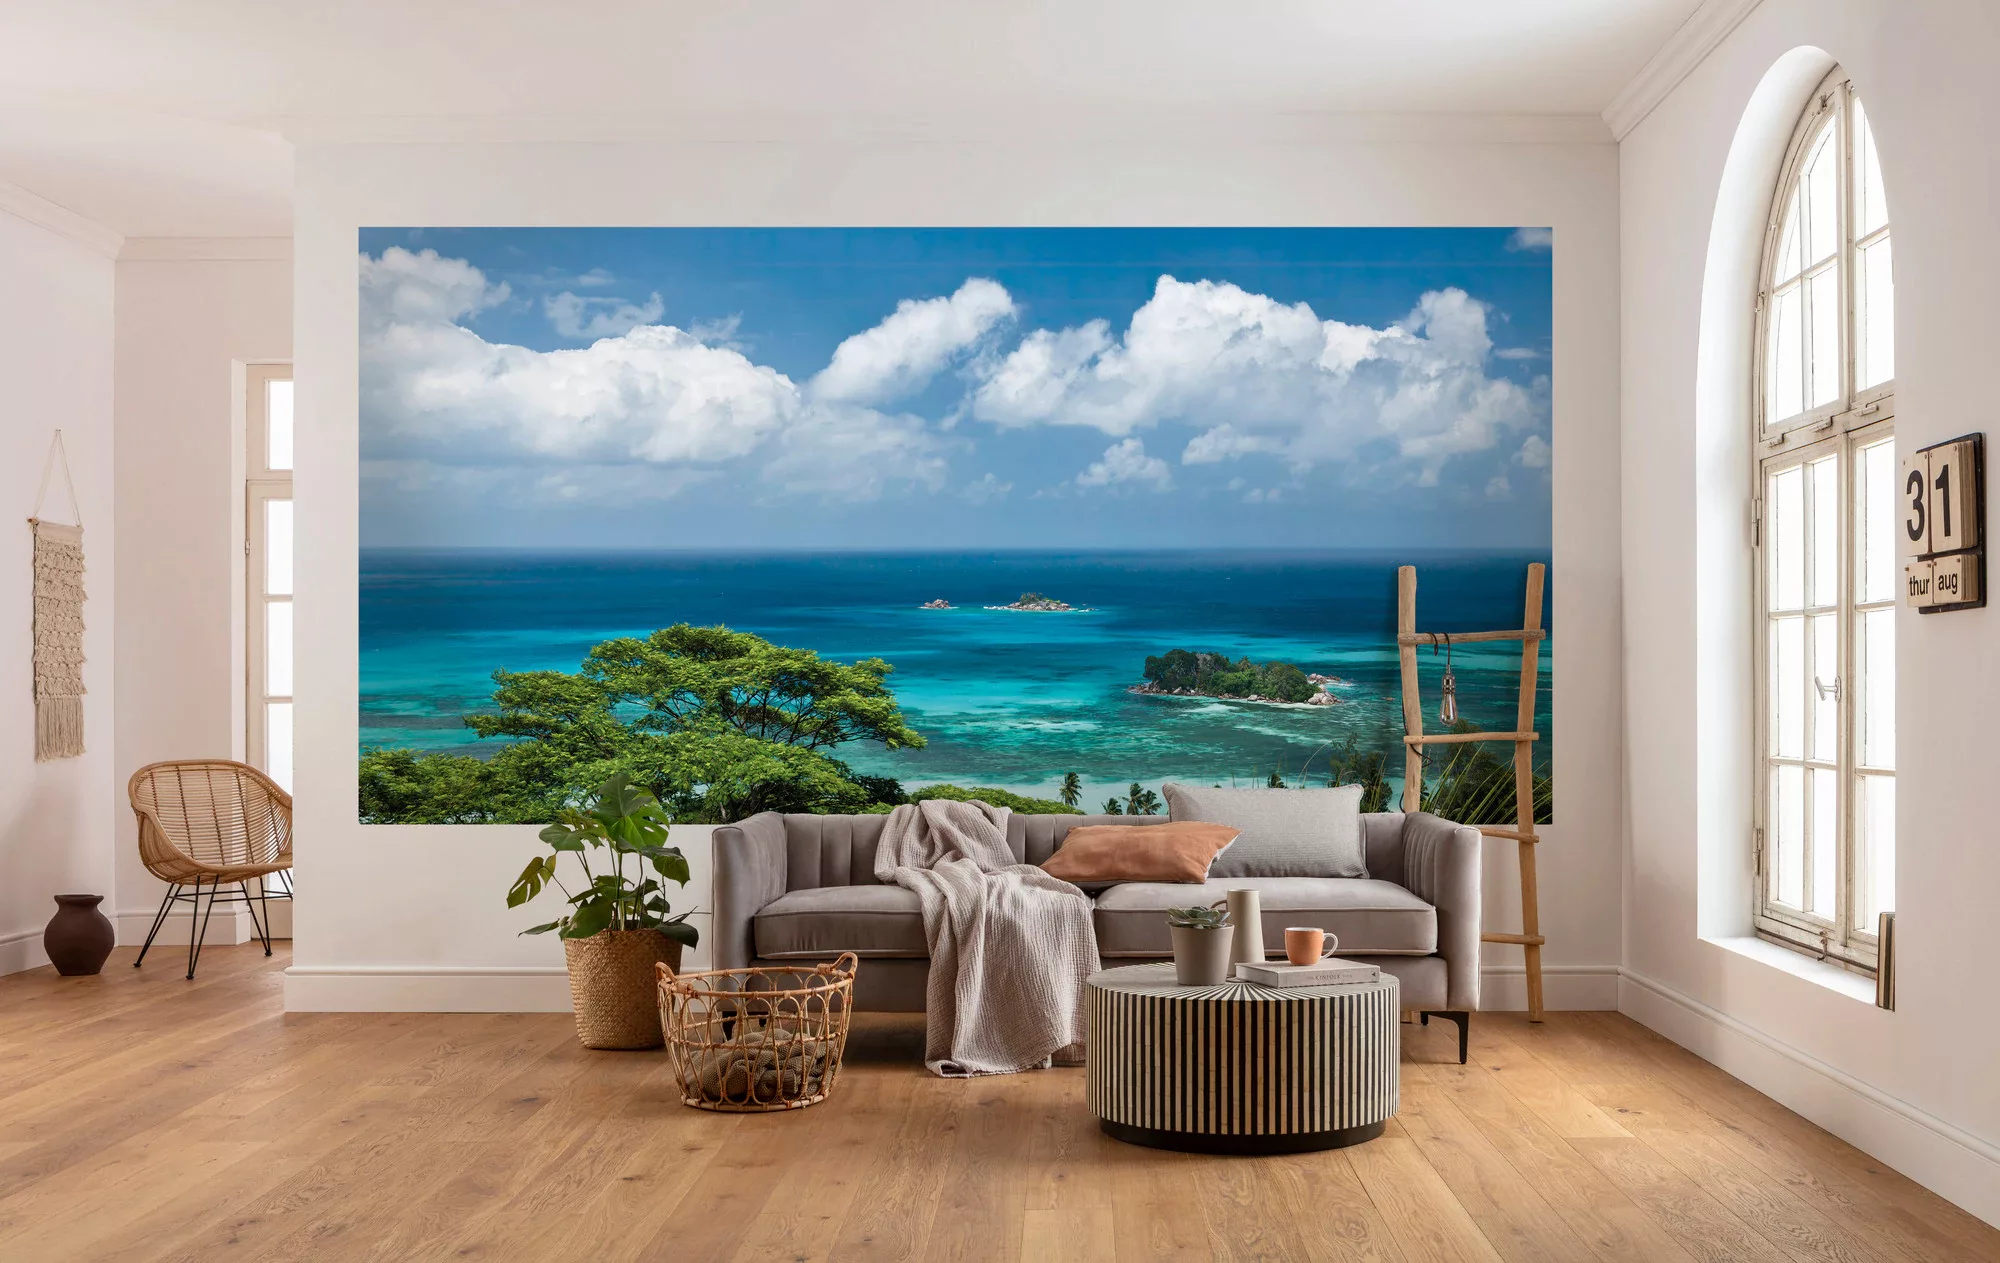 KOMAR Vlies Fototapete - The Sea View - Größe 400 x 200 cm mehrfarbig günstig online kaufen